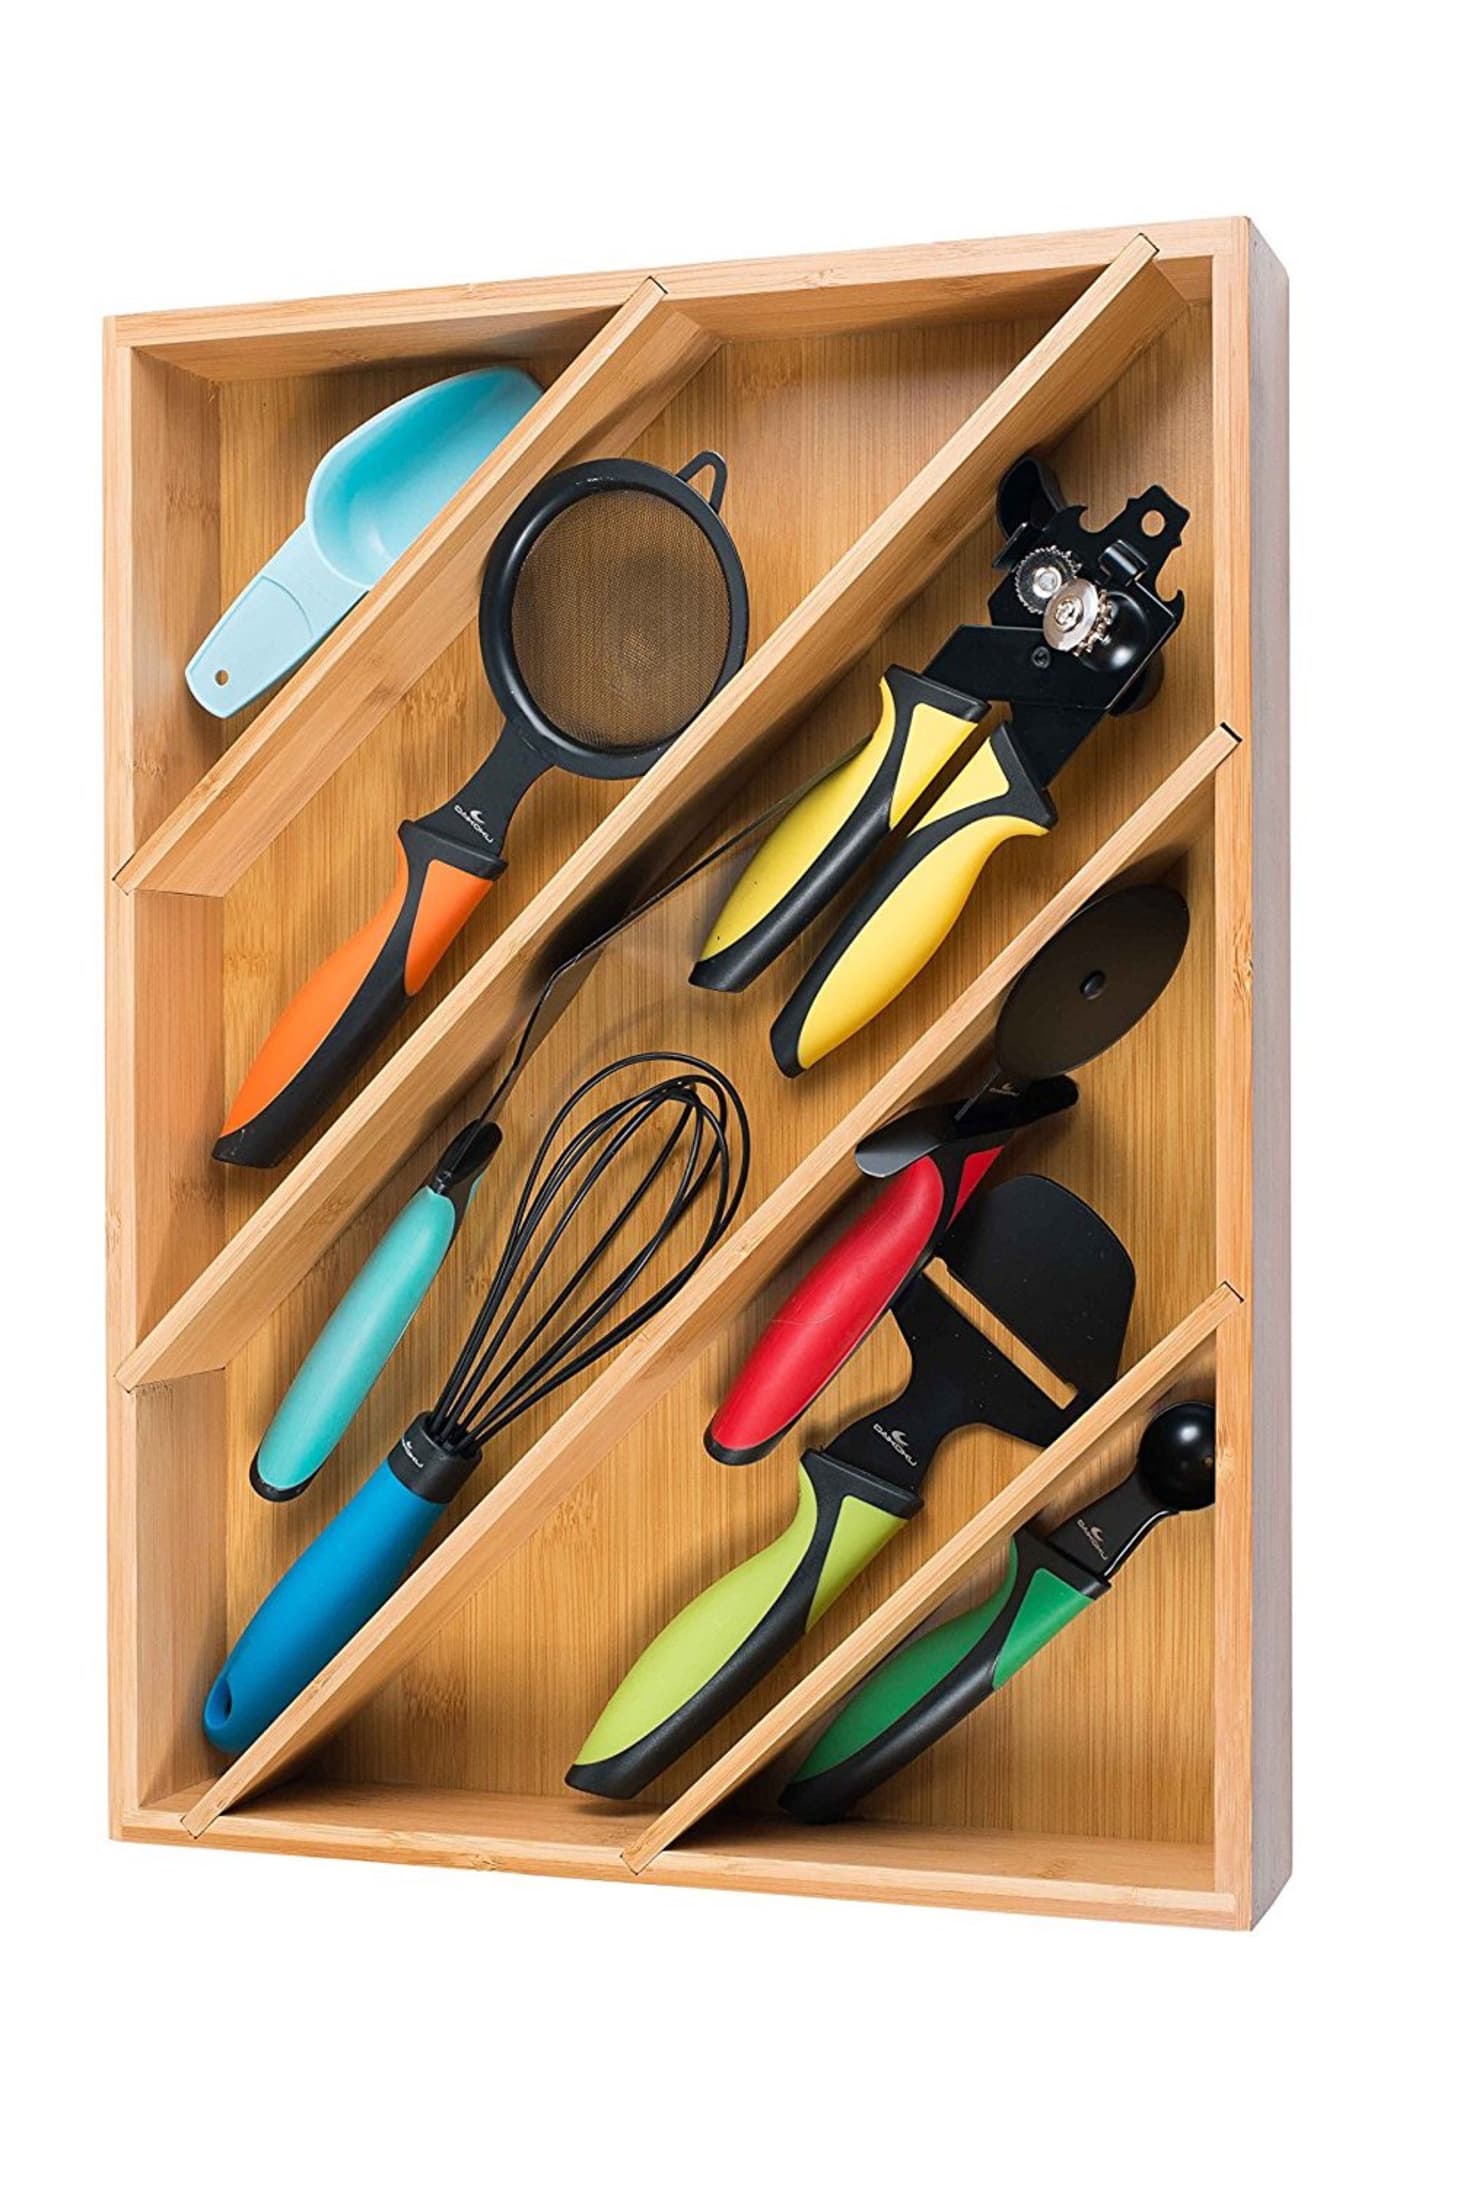 kitchen-drawer-organizers-silverware-utensils-kitchn